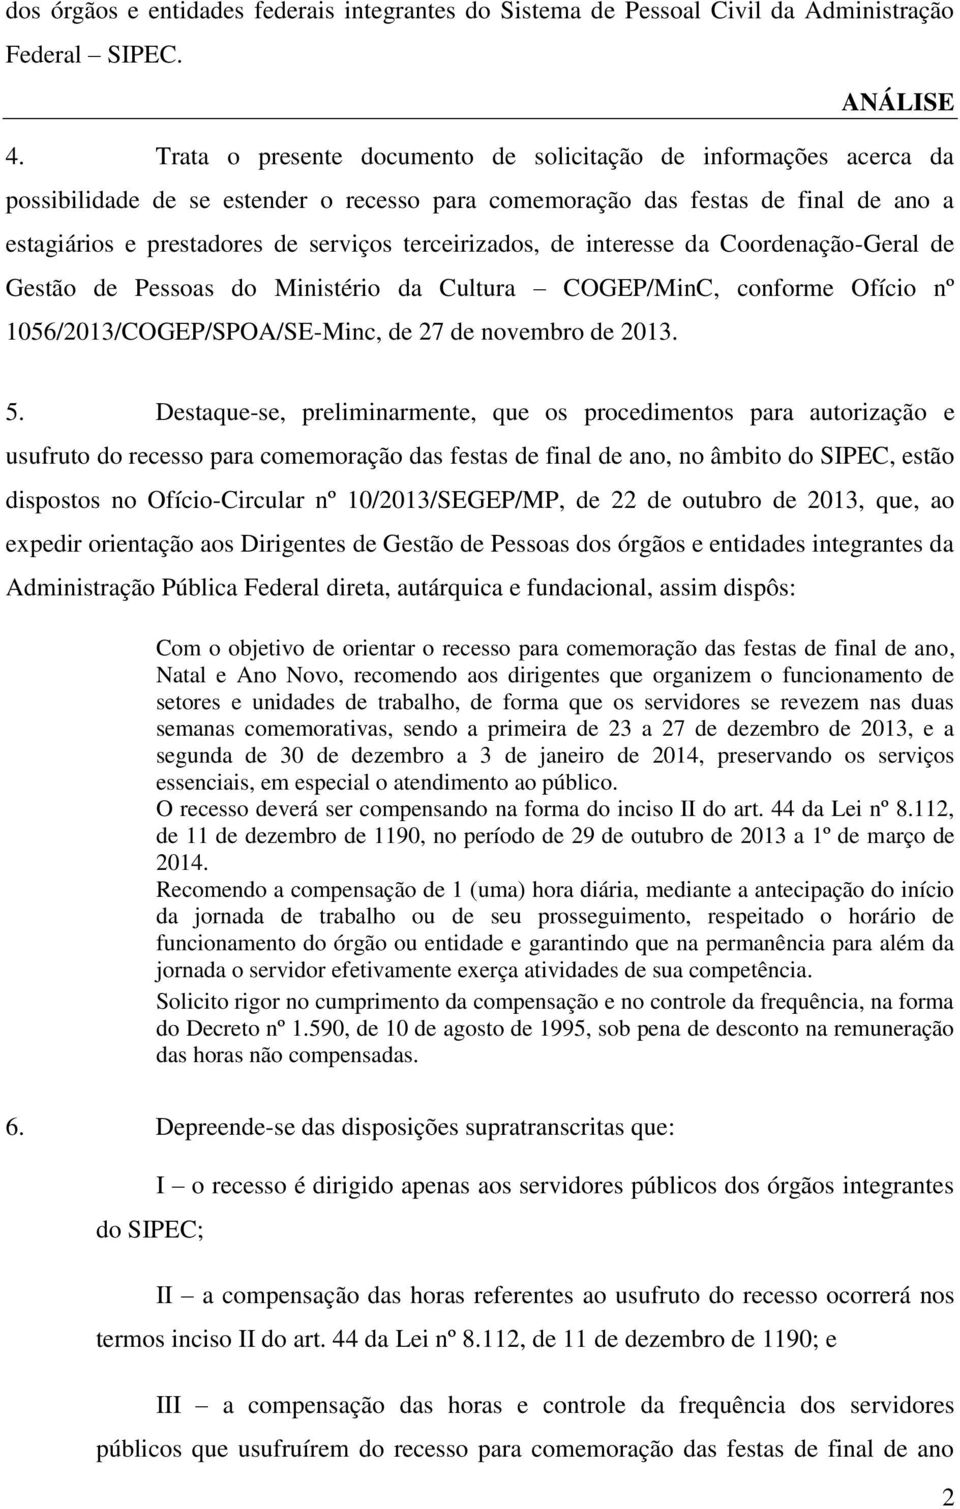 terceirizados, de interesse da Coordenação-Geral de Gestão de Pessoas do Ministério da Cultura COGEP/MinC, conforme Ofício nº 1056/2013/COGEP/SPOA/SE-Minc, de 27 de novembro de 2013. 5.